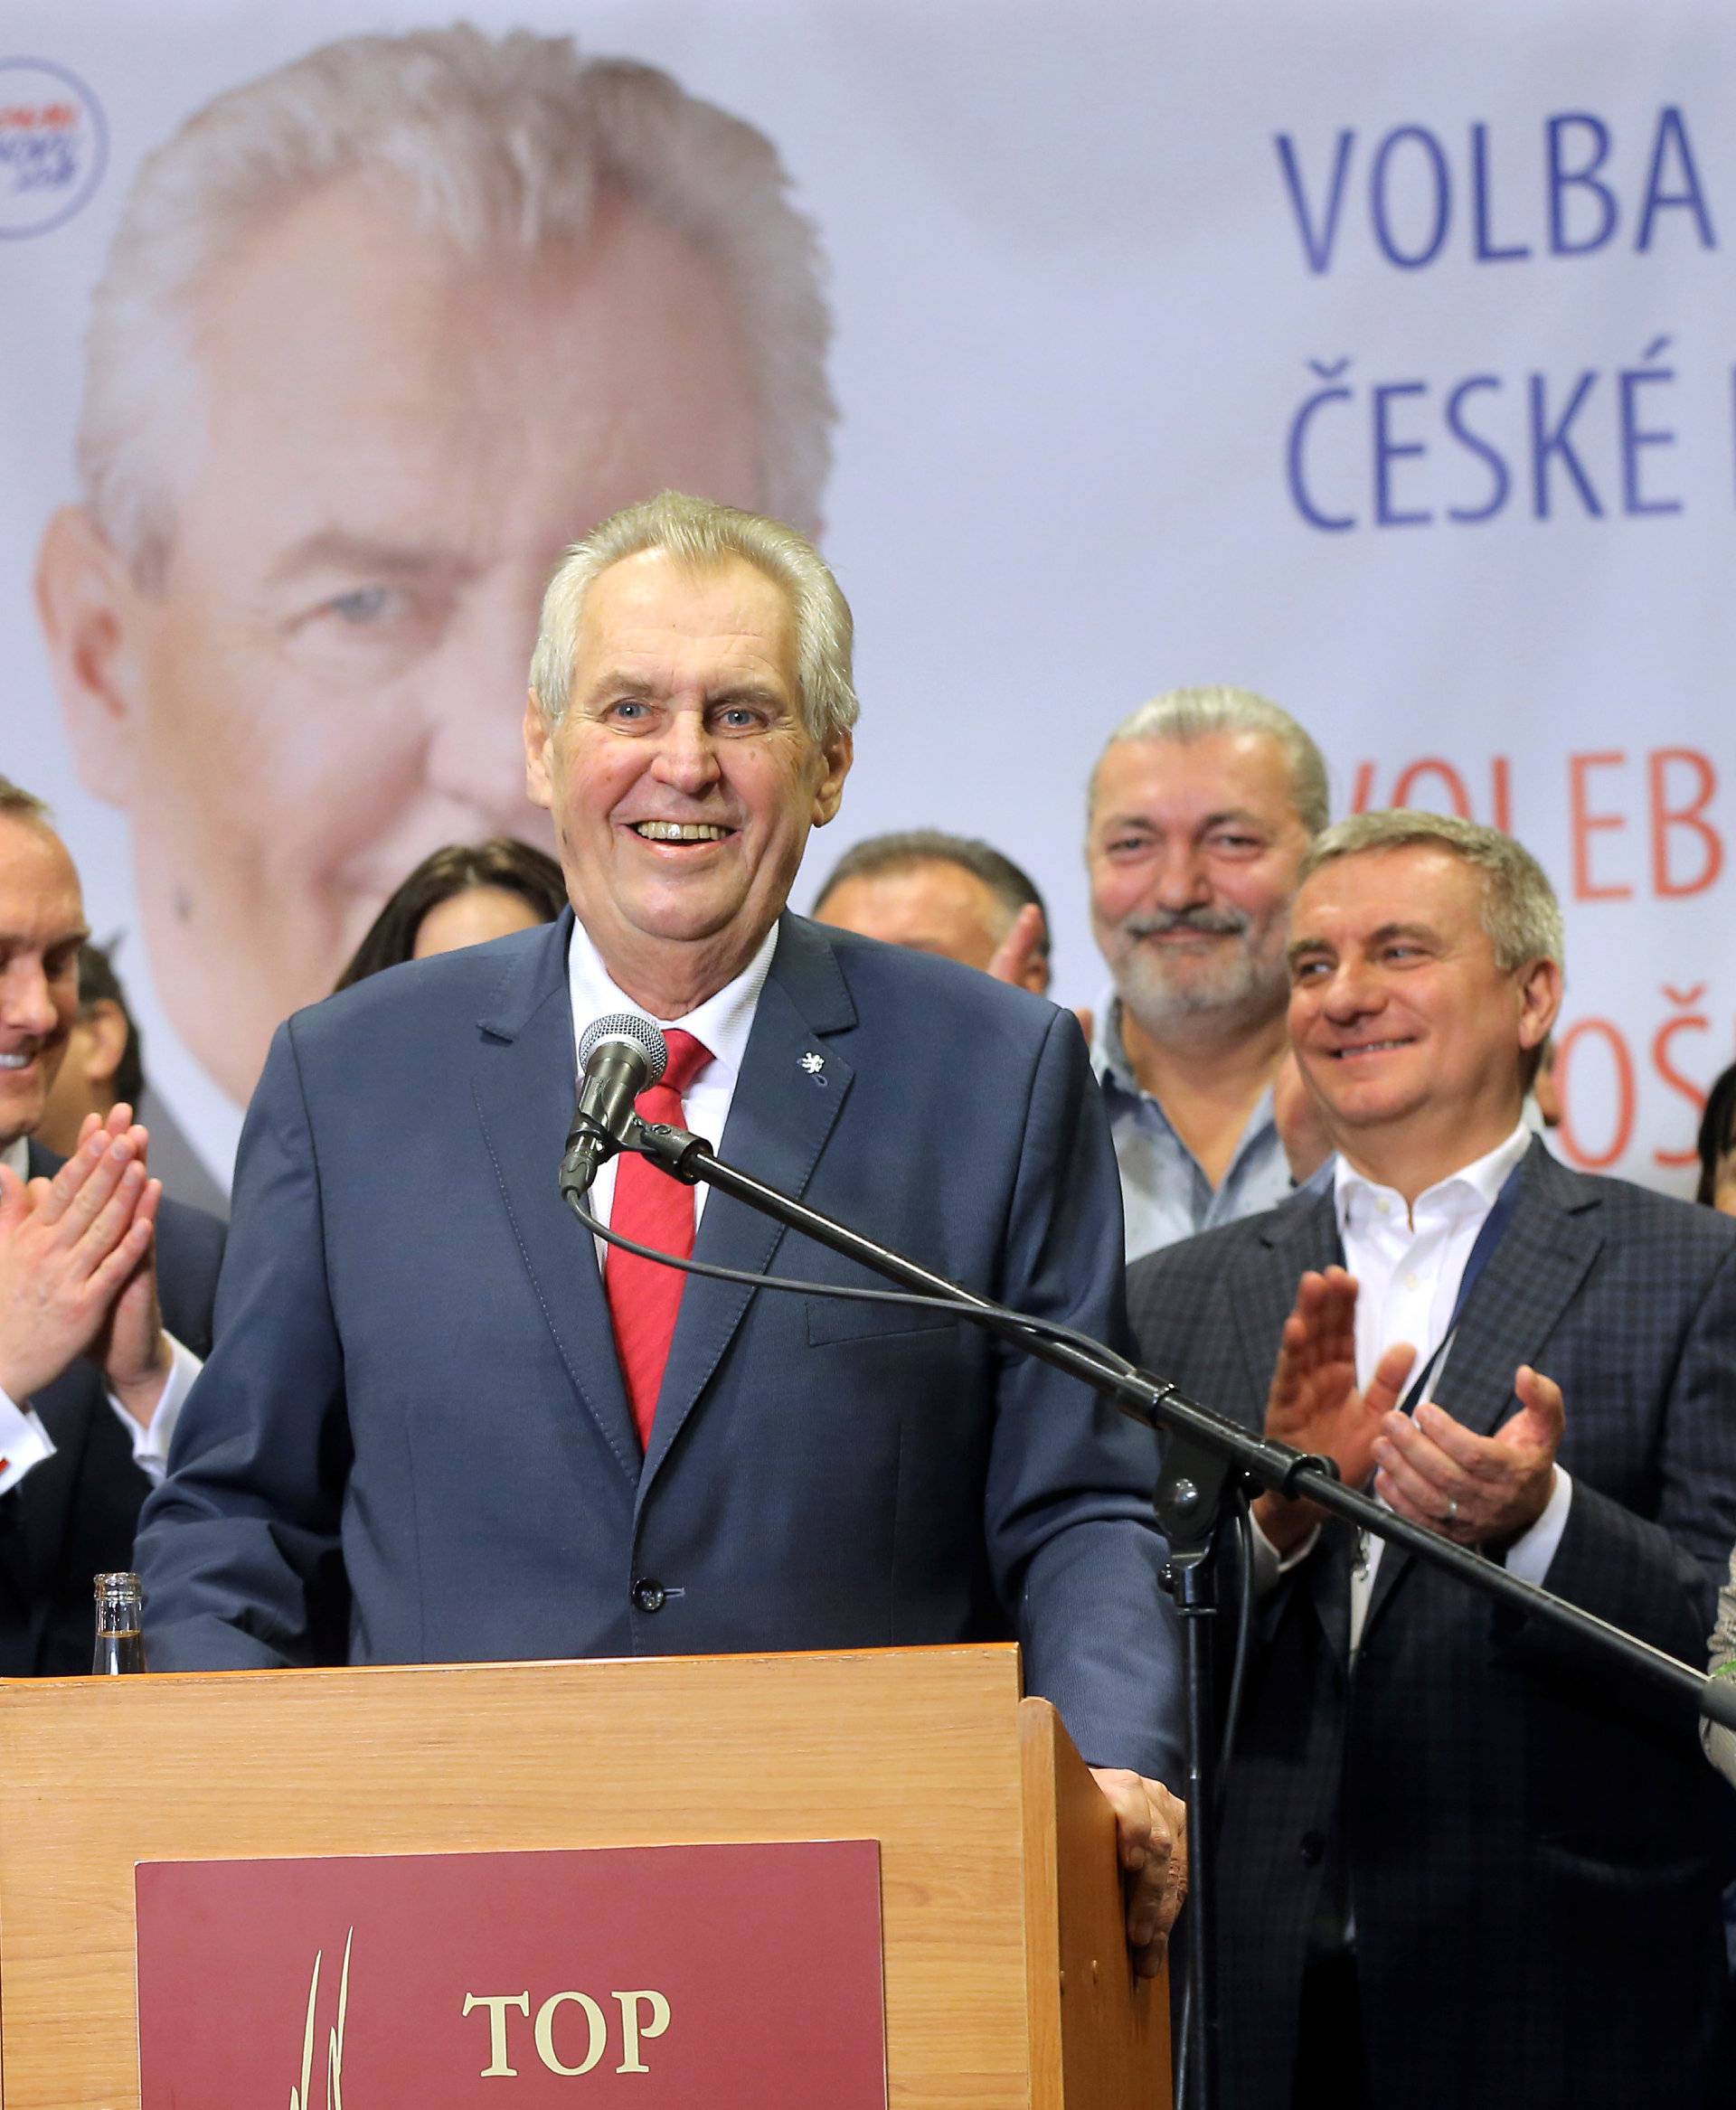 Czech election